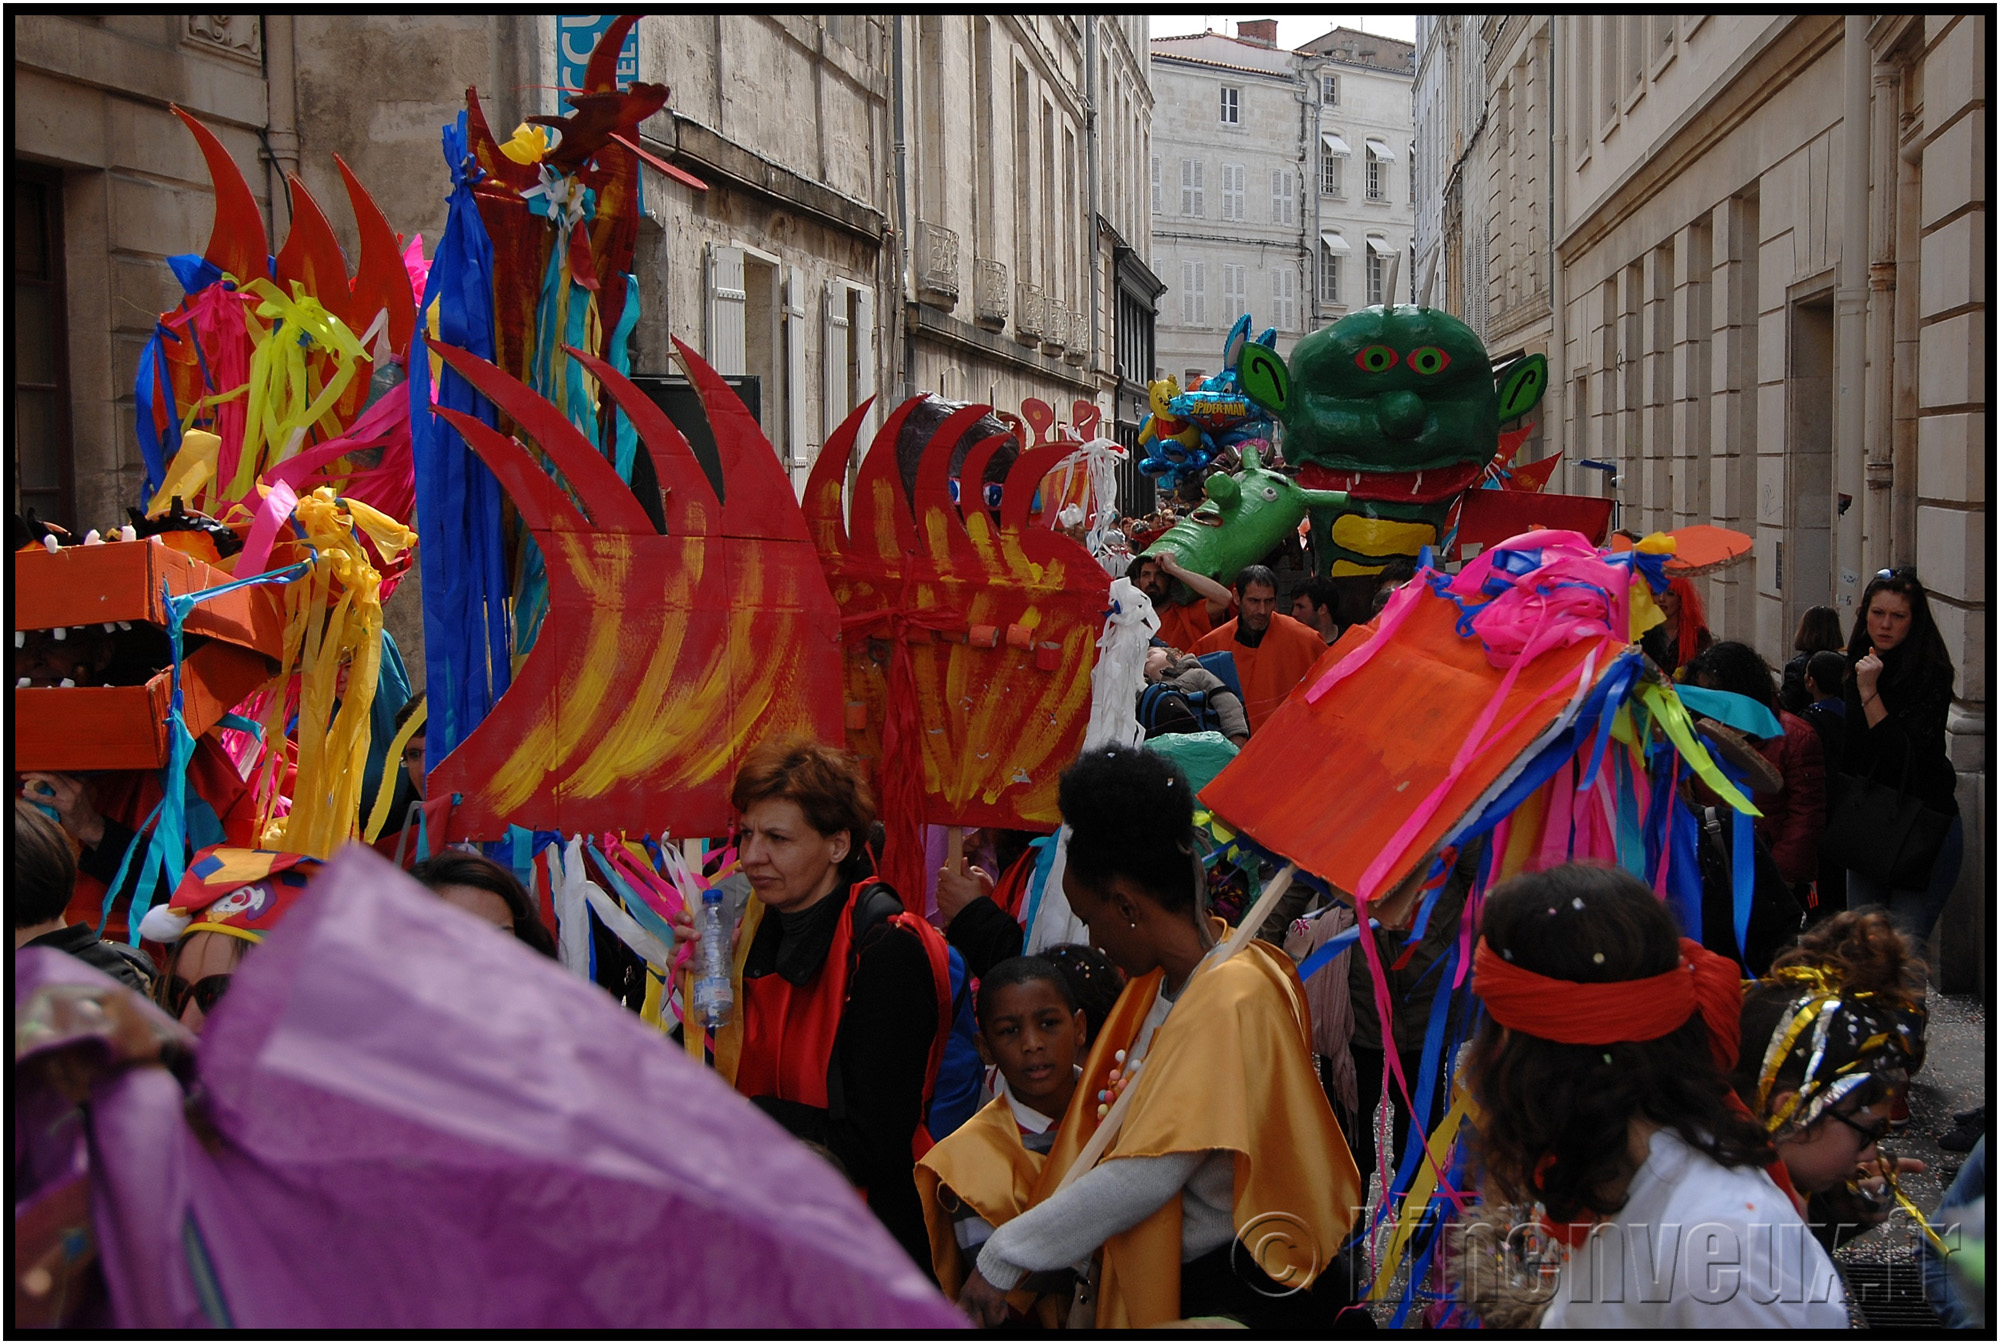 kinenveux_47_carnaval2015lr.jpg - Carnaval des Enfants 2015 - La Rochelle